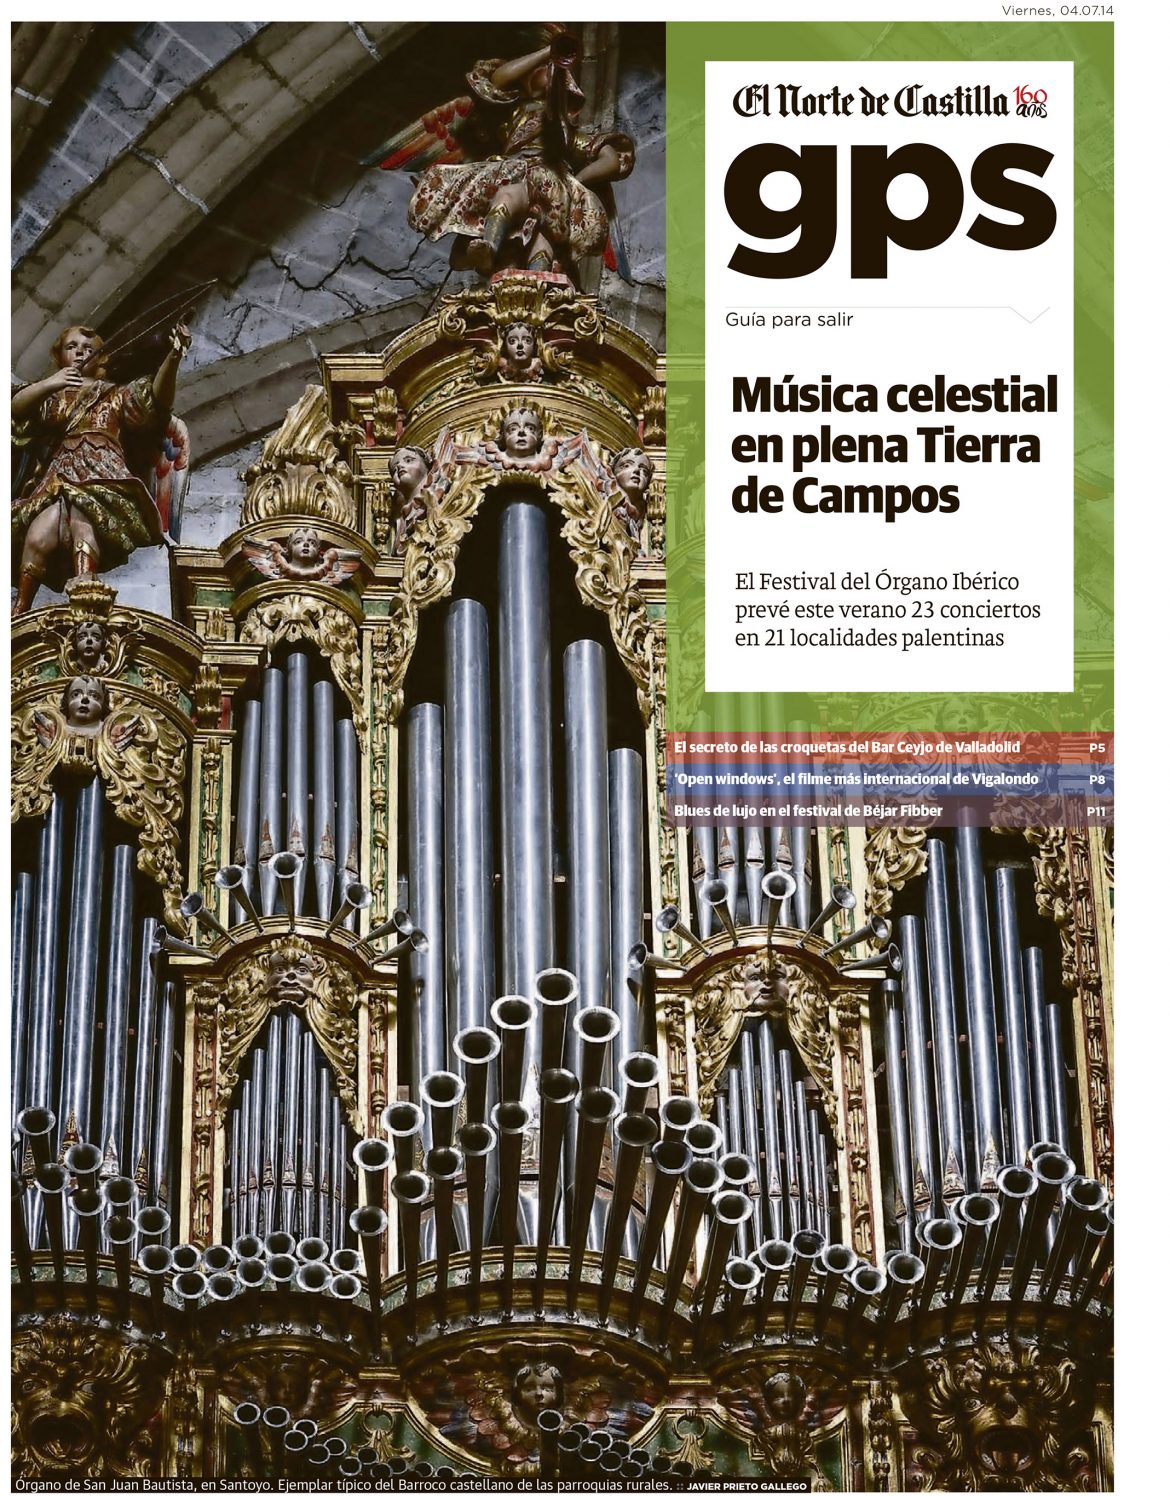 Festival de órgano ibérico en Palencia. Reportaje de Javier Prieto Gallego en El Norte de Castilla